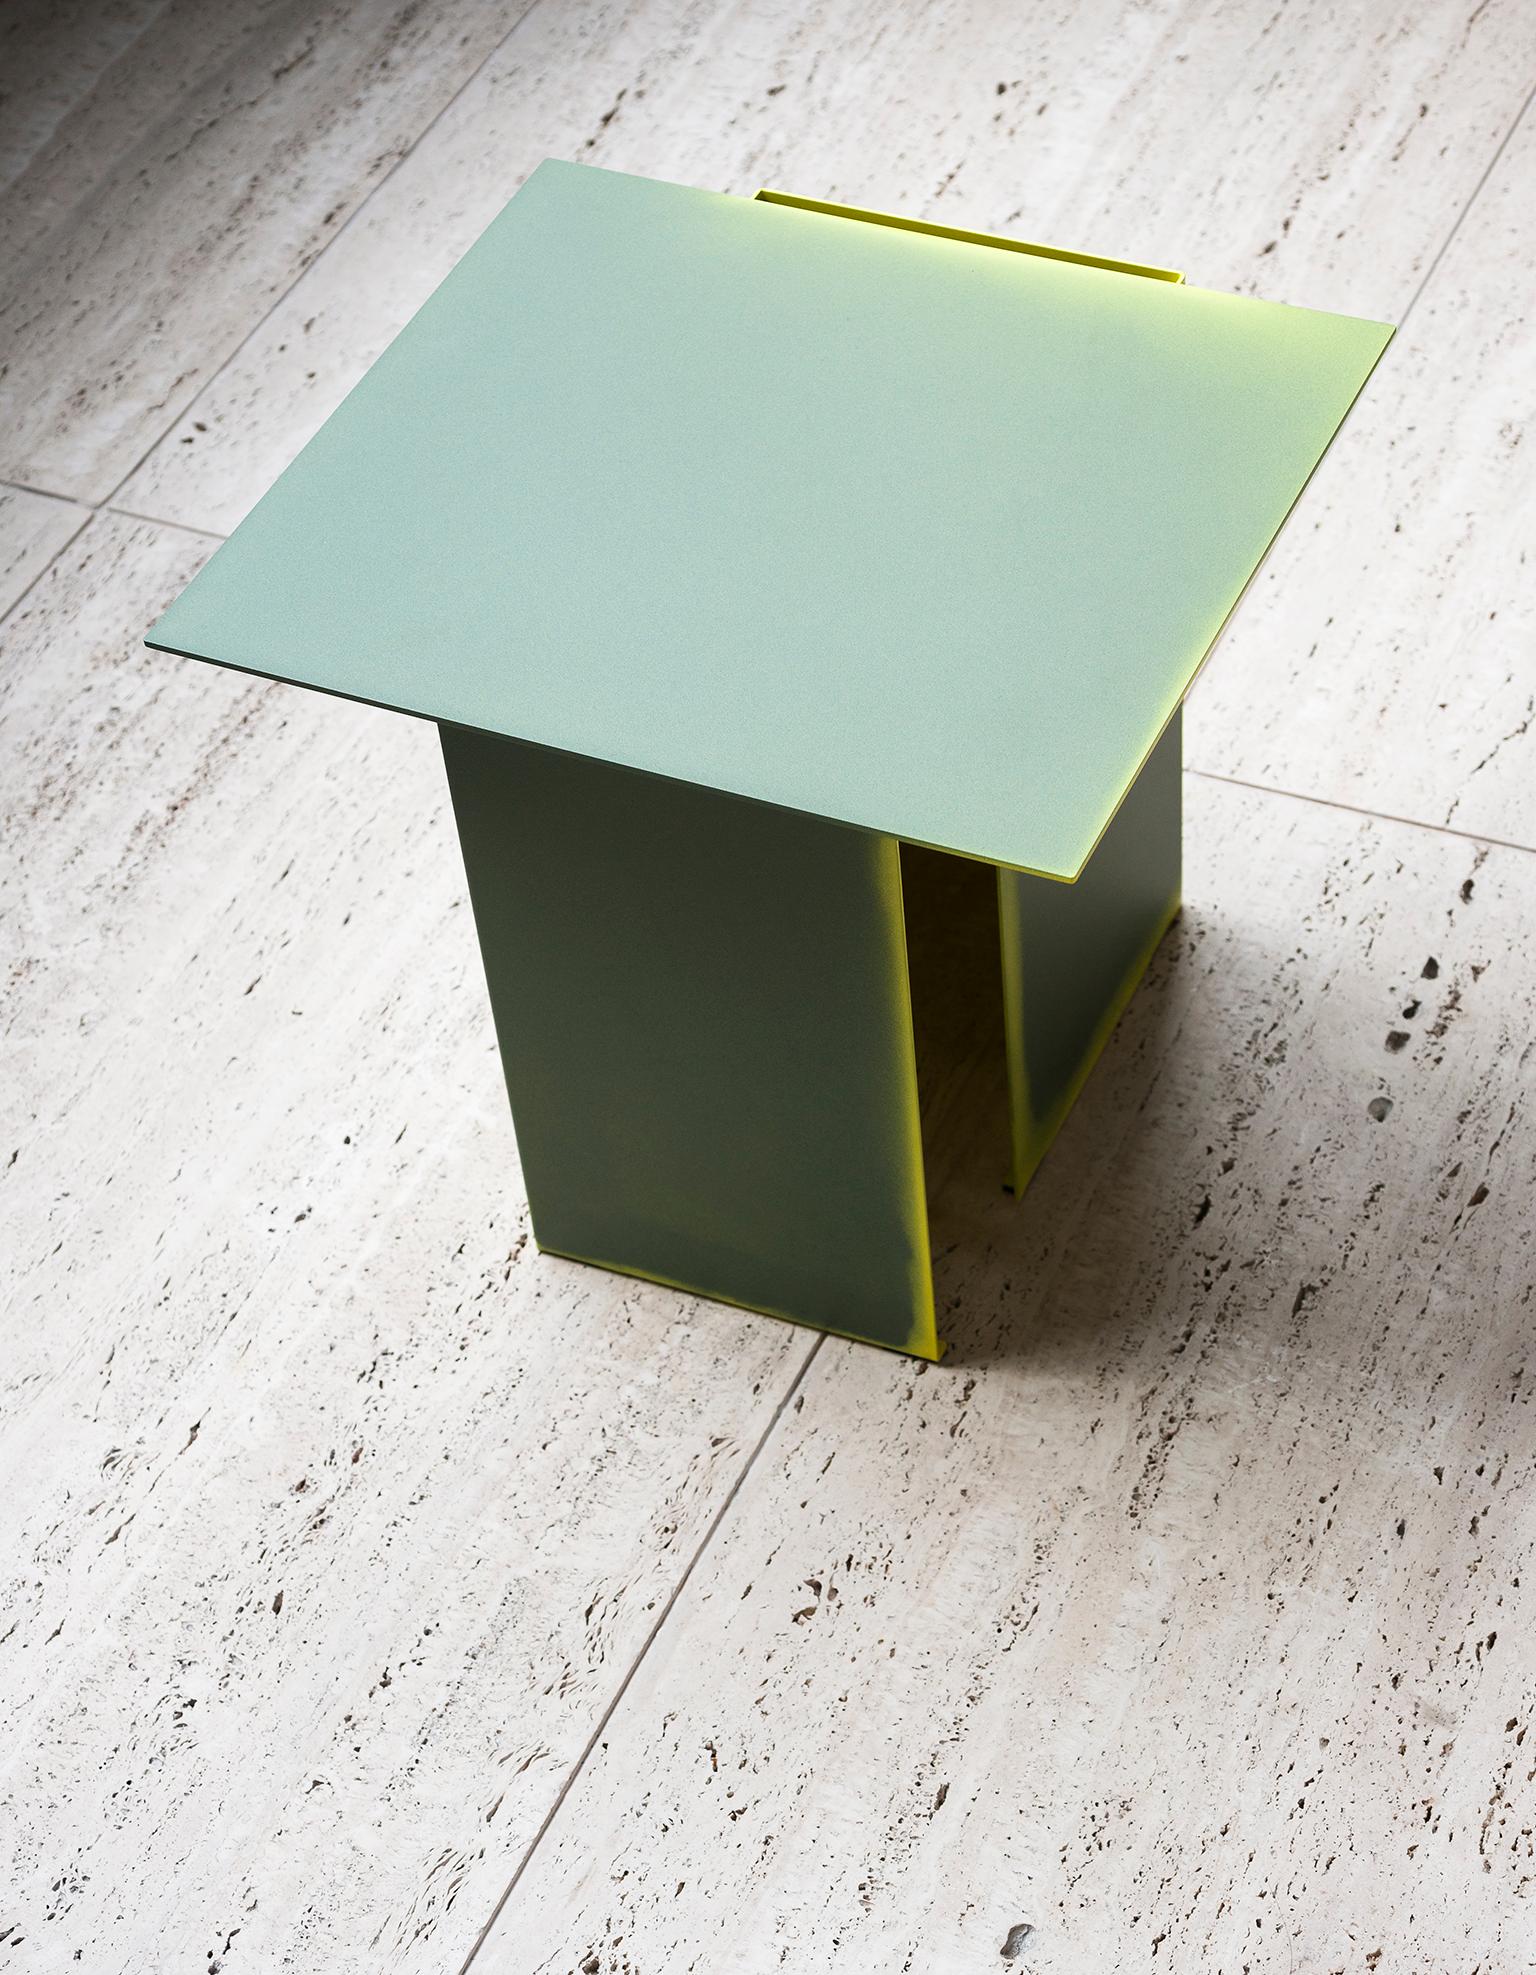 Les formes architecturales ont inspiré cette collection de tables basses aux lignes futuristes du studio de design néerlandais Truly Truly. Réalisées à partir de feuilles de métal pliées et soudées, les tables basses Daze sont colorées à la main,